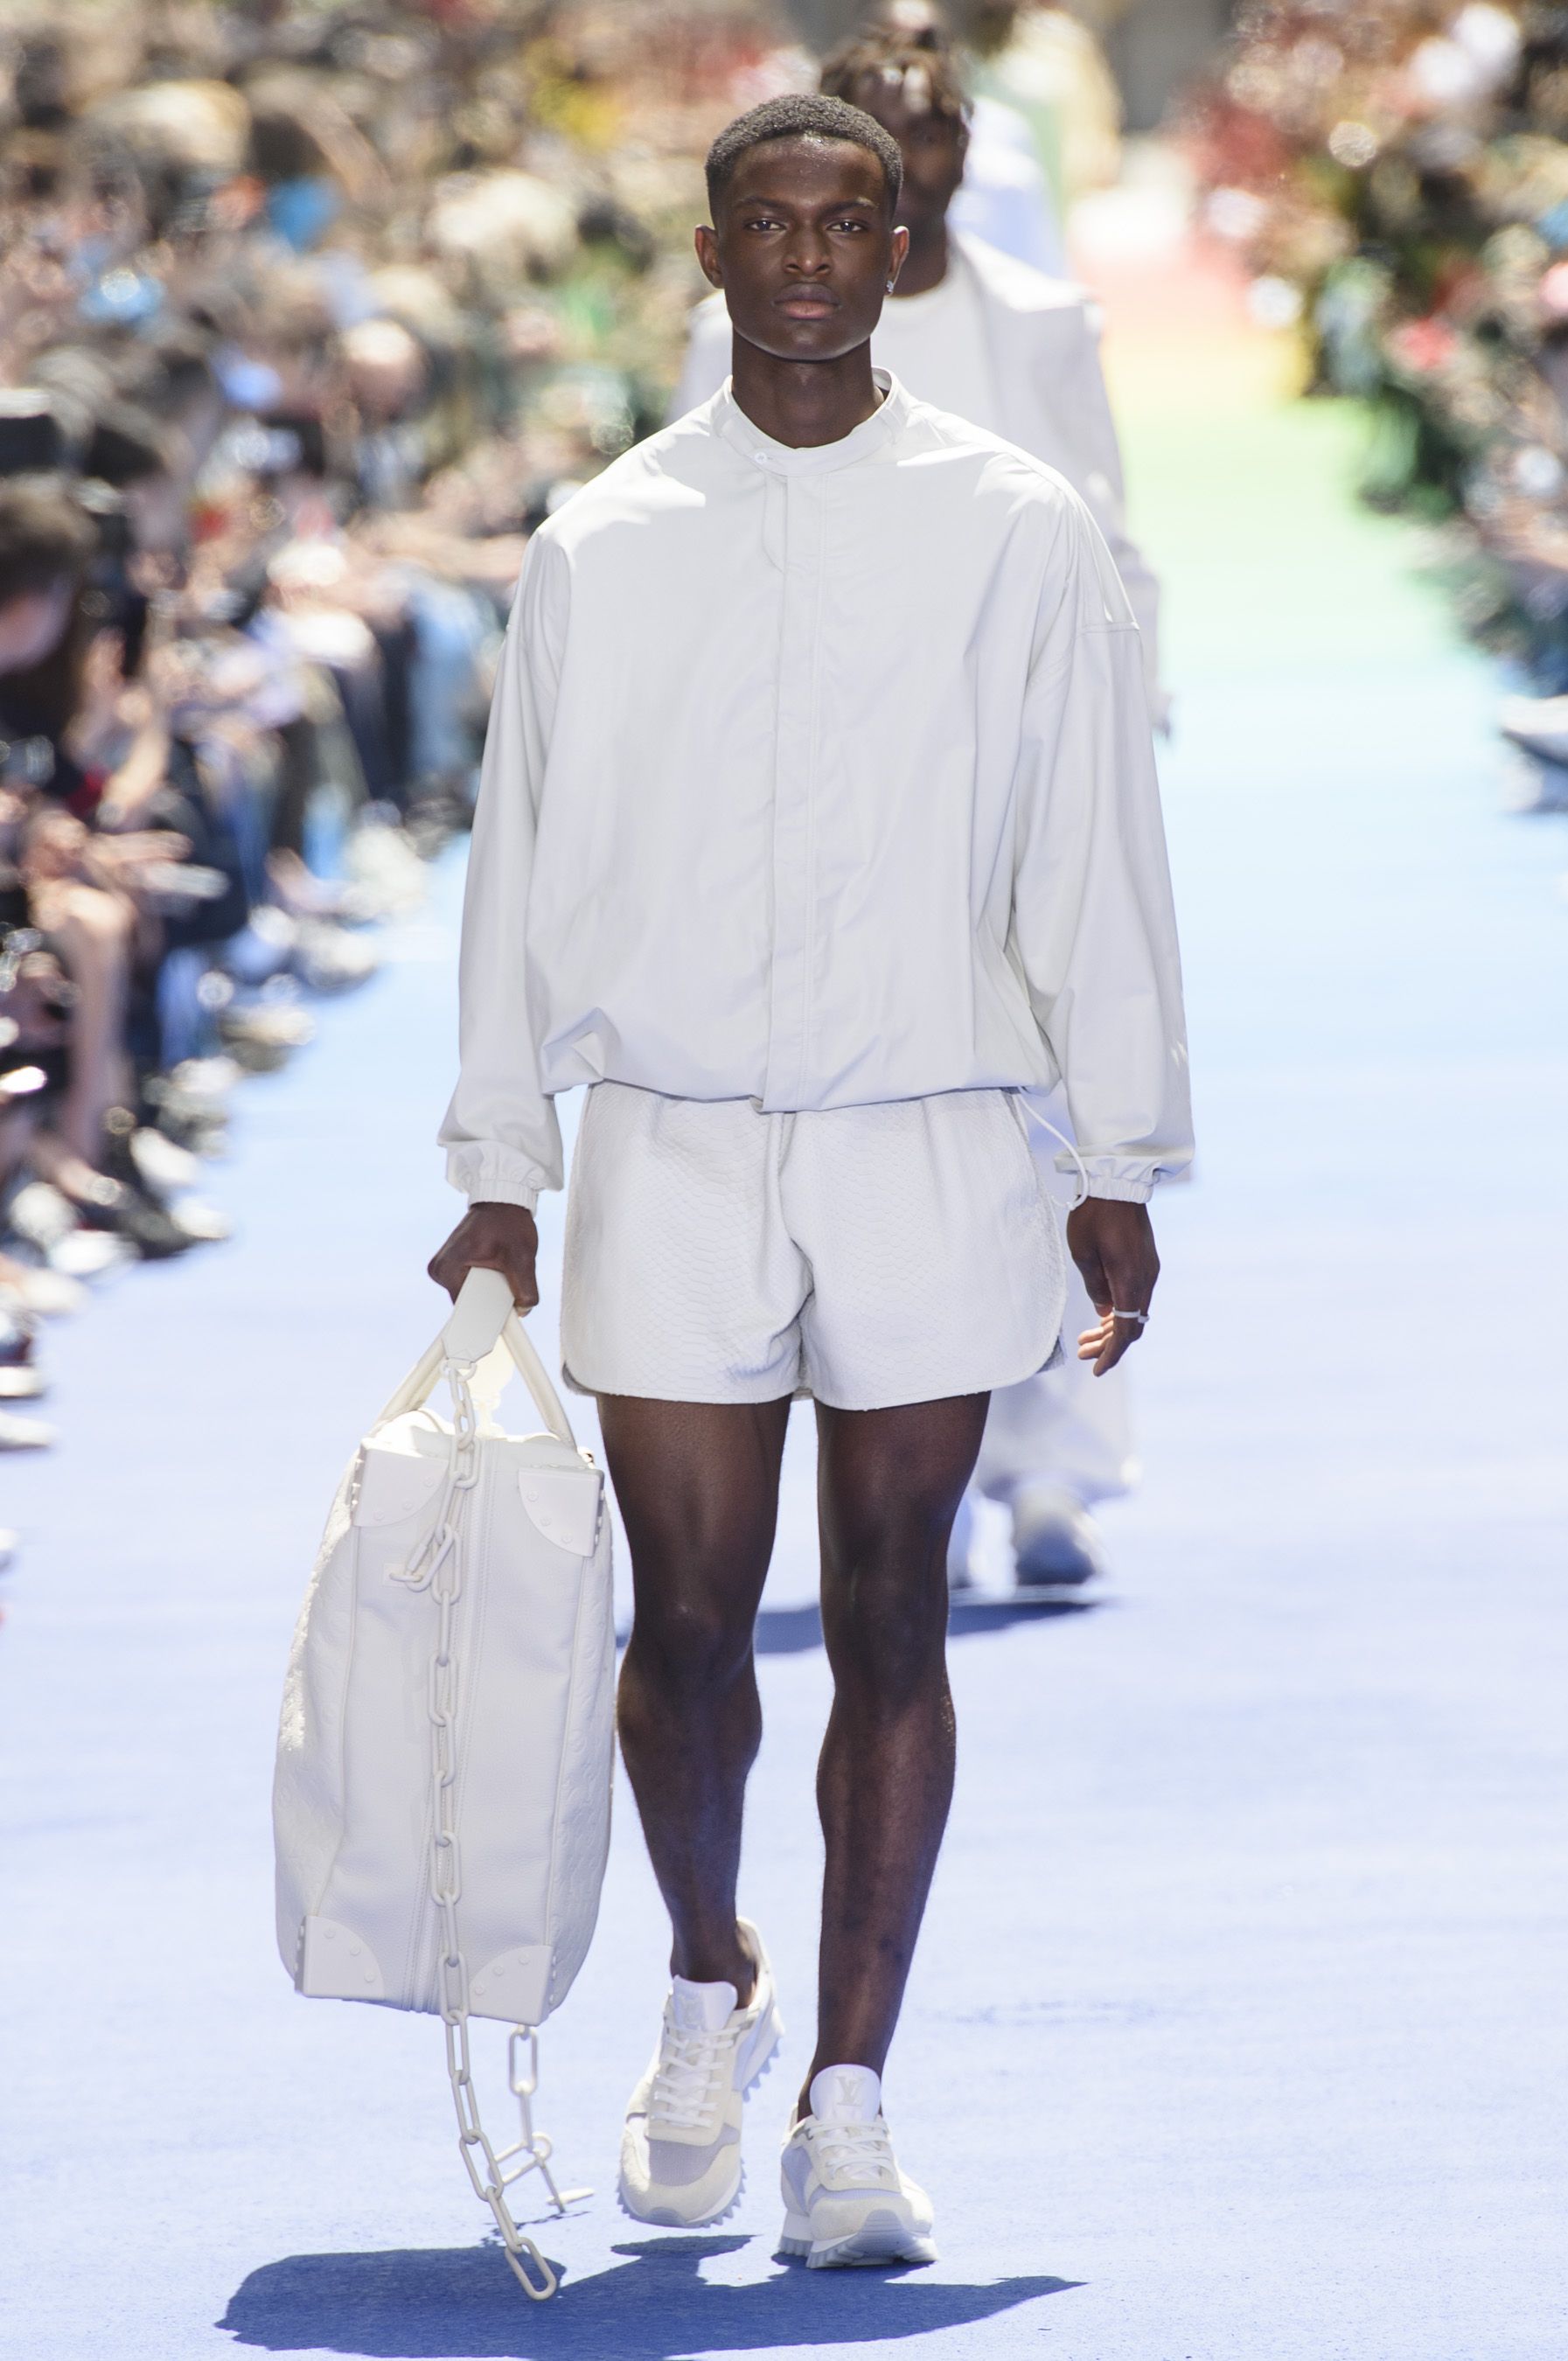 Louis Vuitton Fall 2019 Menswear Collection